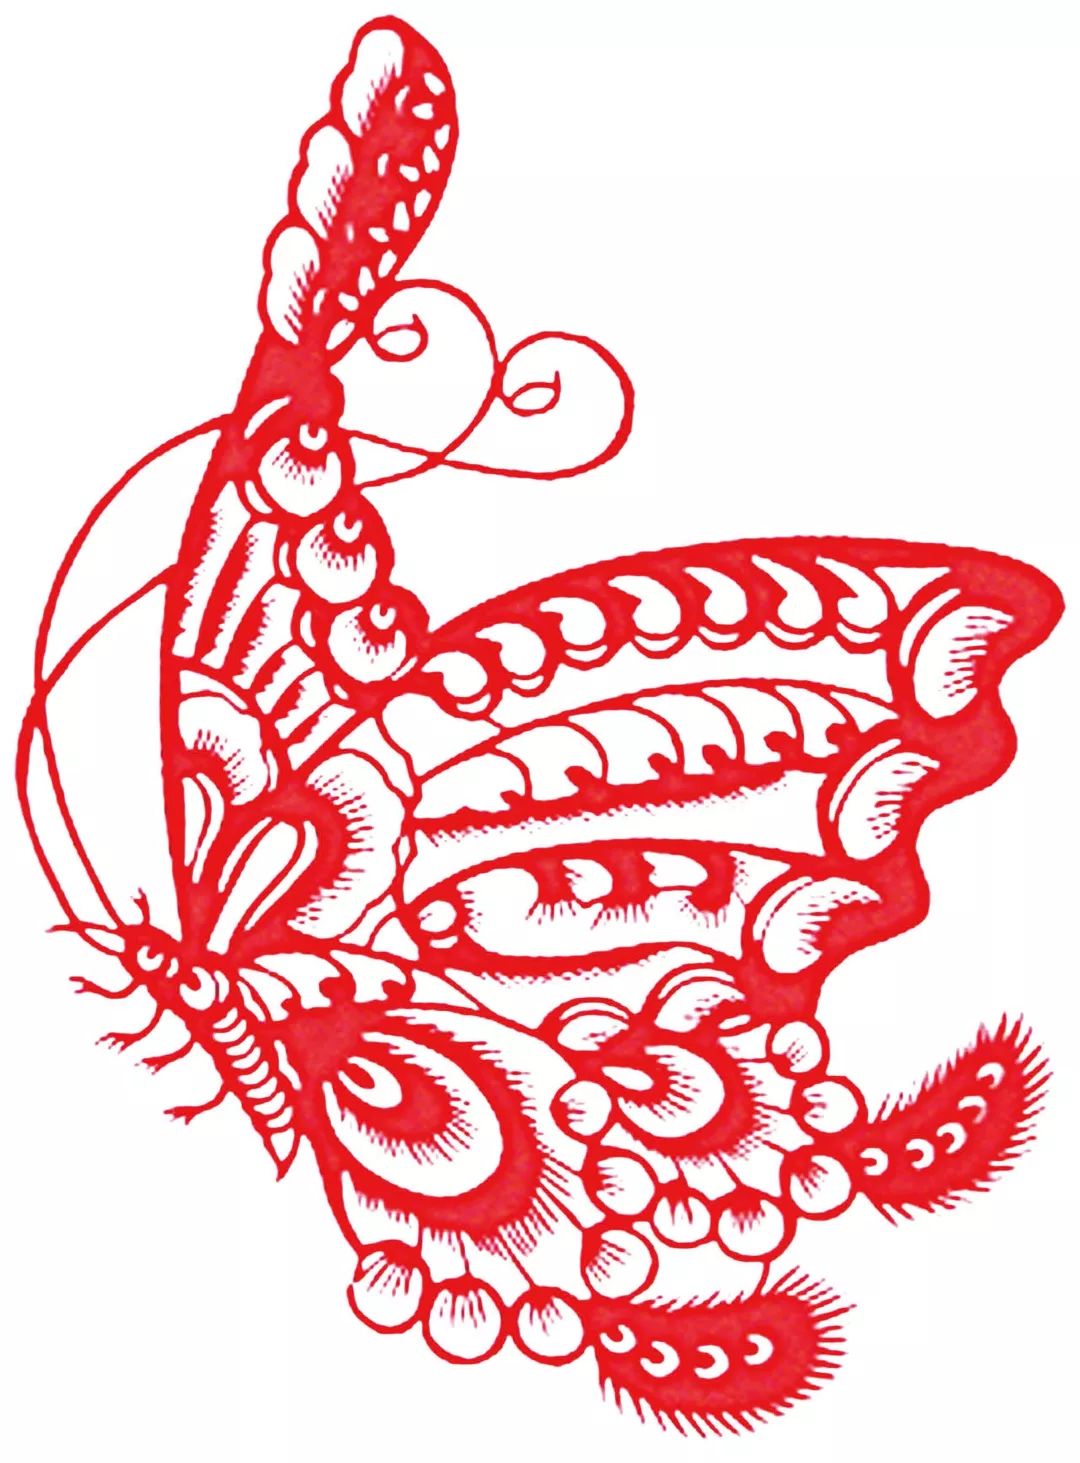 蝴蝶剪纸蝴蝶鳞片蝴蝶被誉为天然的艺术品,色彩斑斓,婀娜多姿,不断